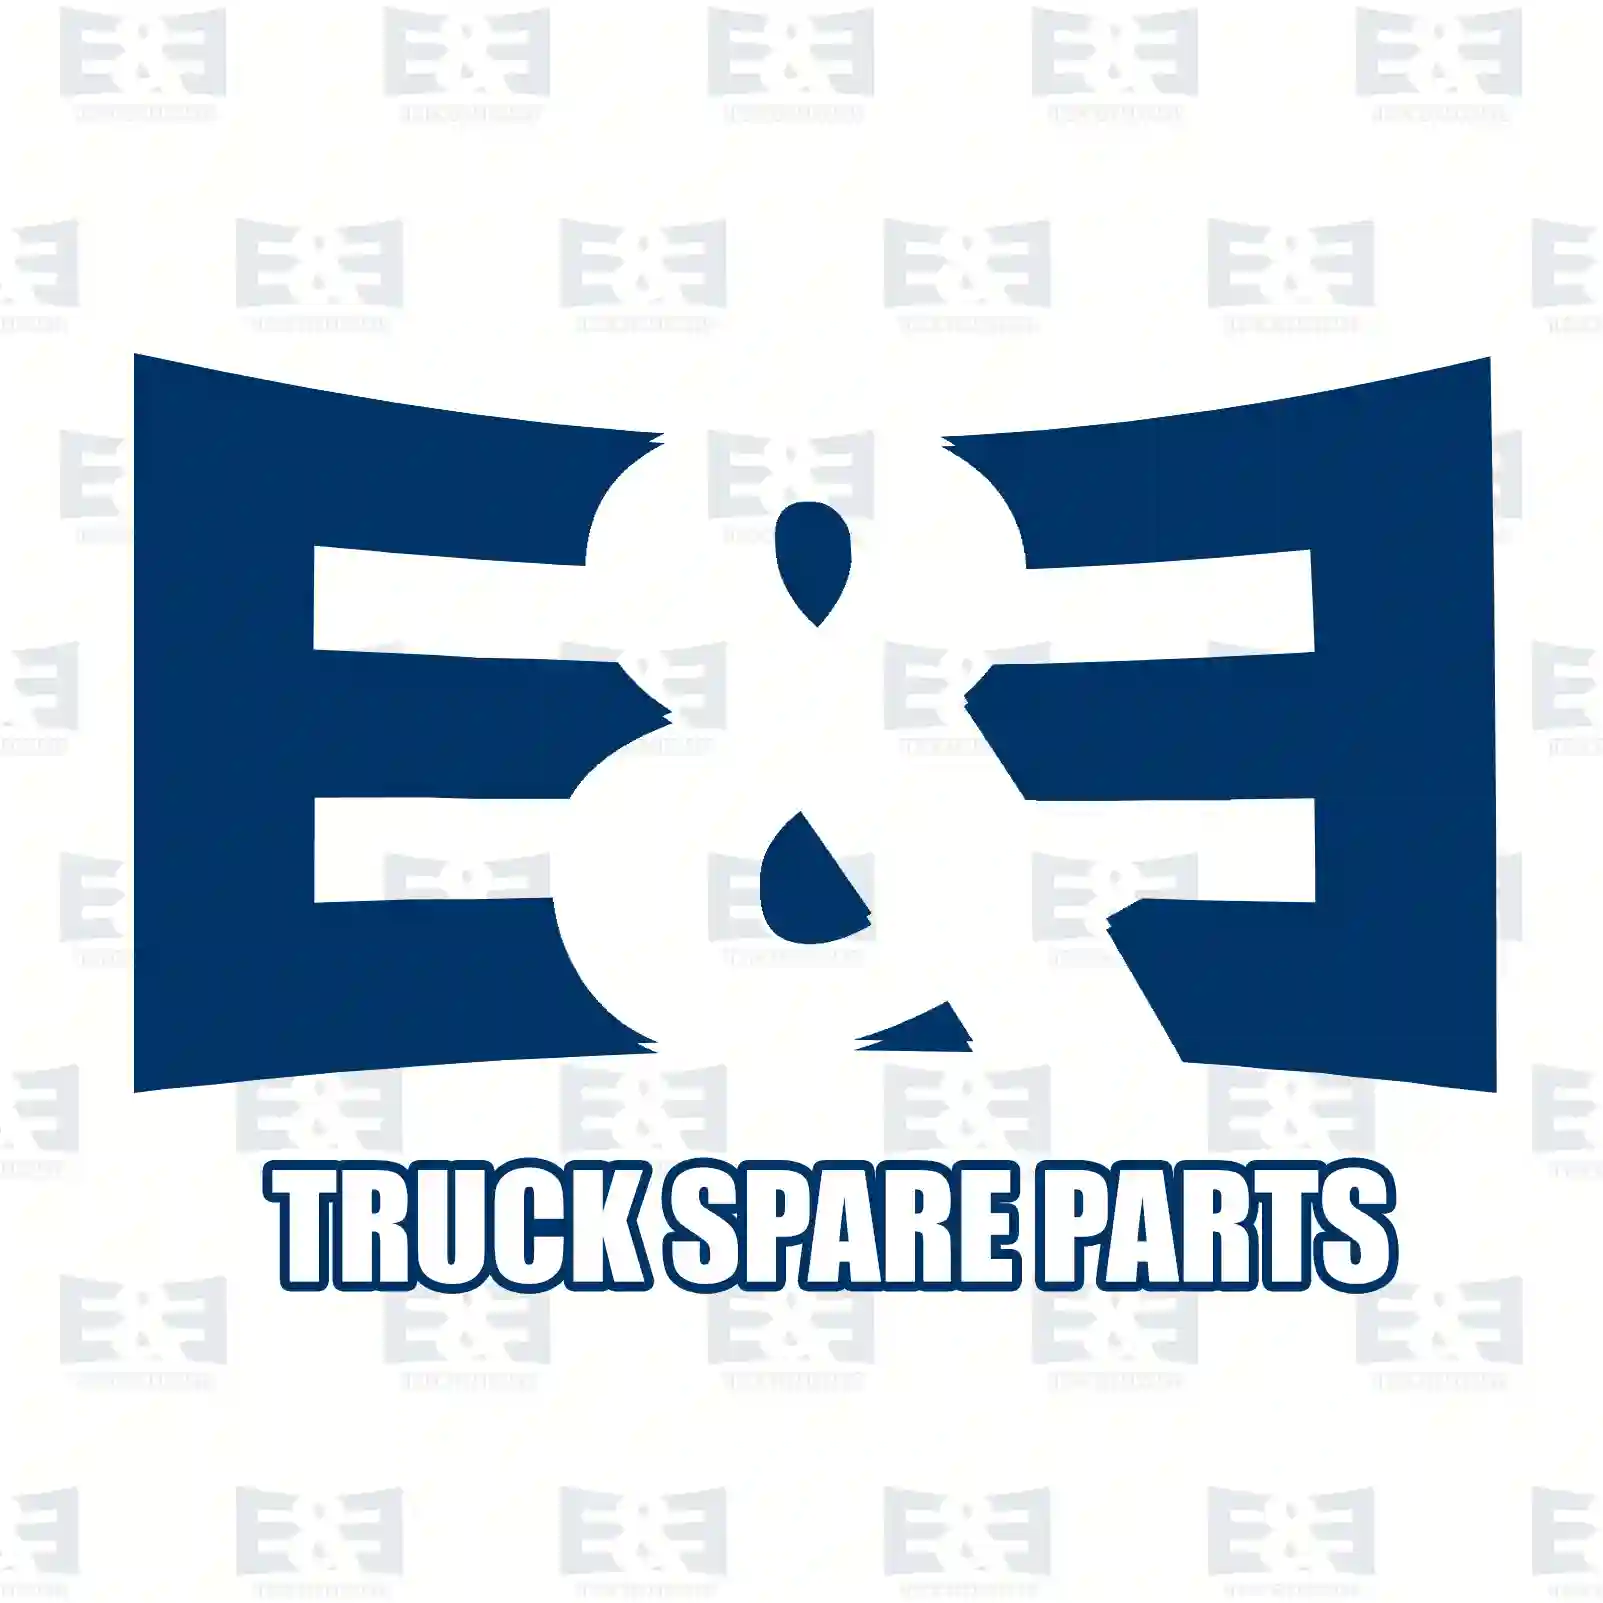 Propeller shaft, 2E2276900, 81393856116, 8139 ||  2E2276900 E&E Truck Spare Parts | Truck Spare Parts, Auotomotive Spare Parts Propeller shaft, 2E2276900, 81393856116, 8139 ||  2E2276900 E&E Truck Spare Parts | Truck Spare Parts, Auotomotive Spare Parts